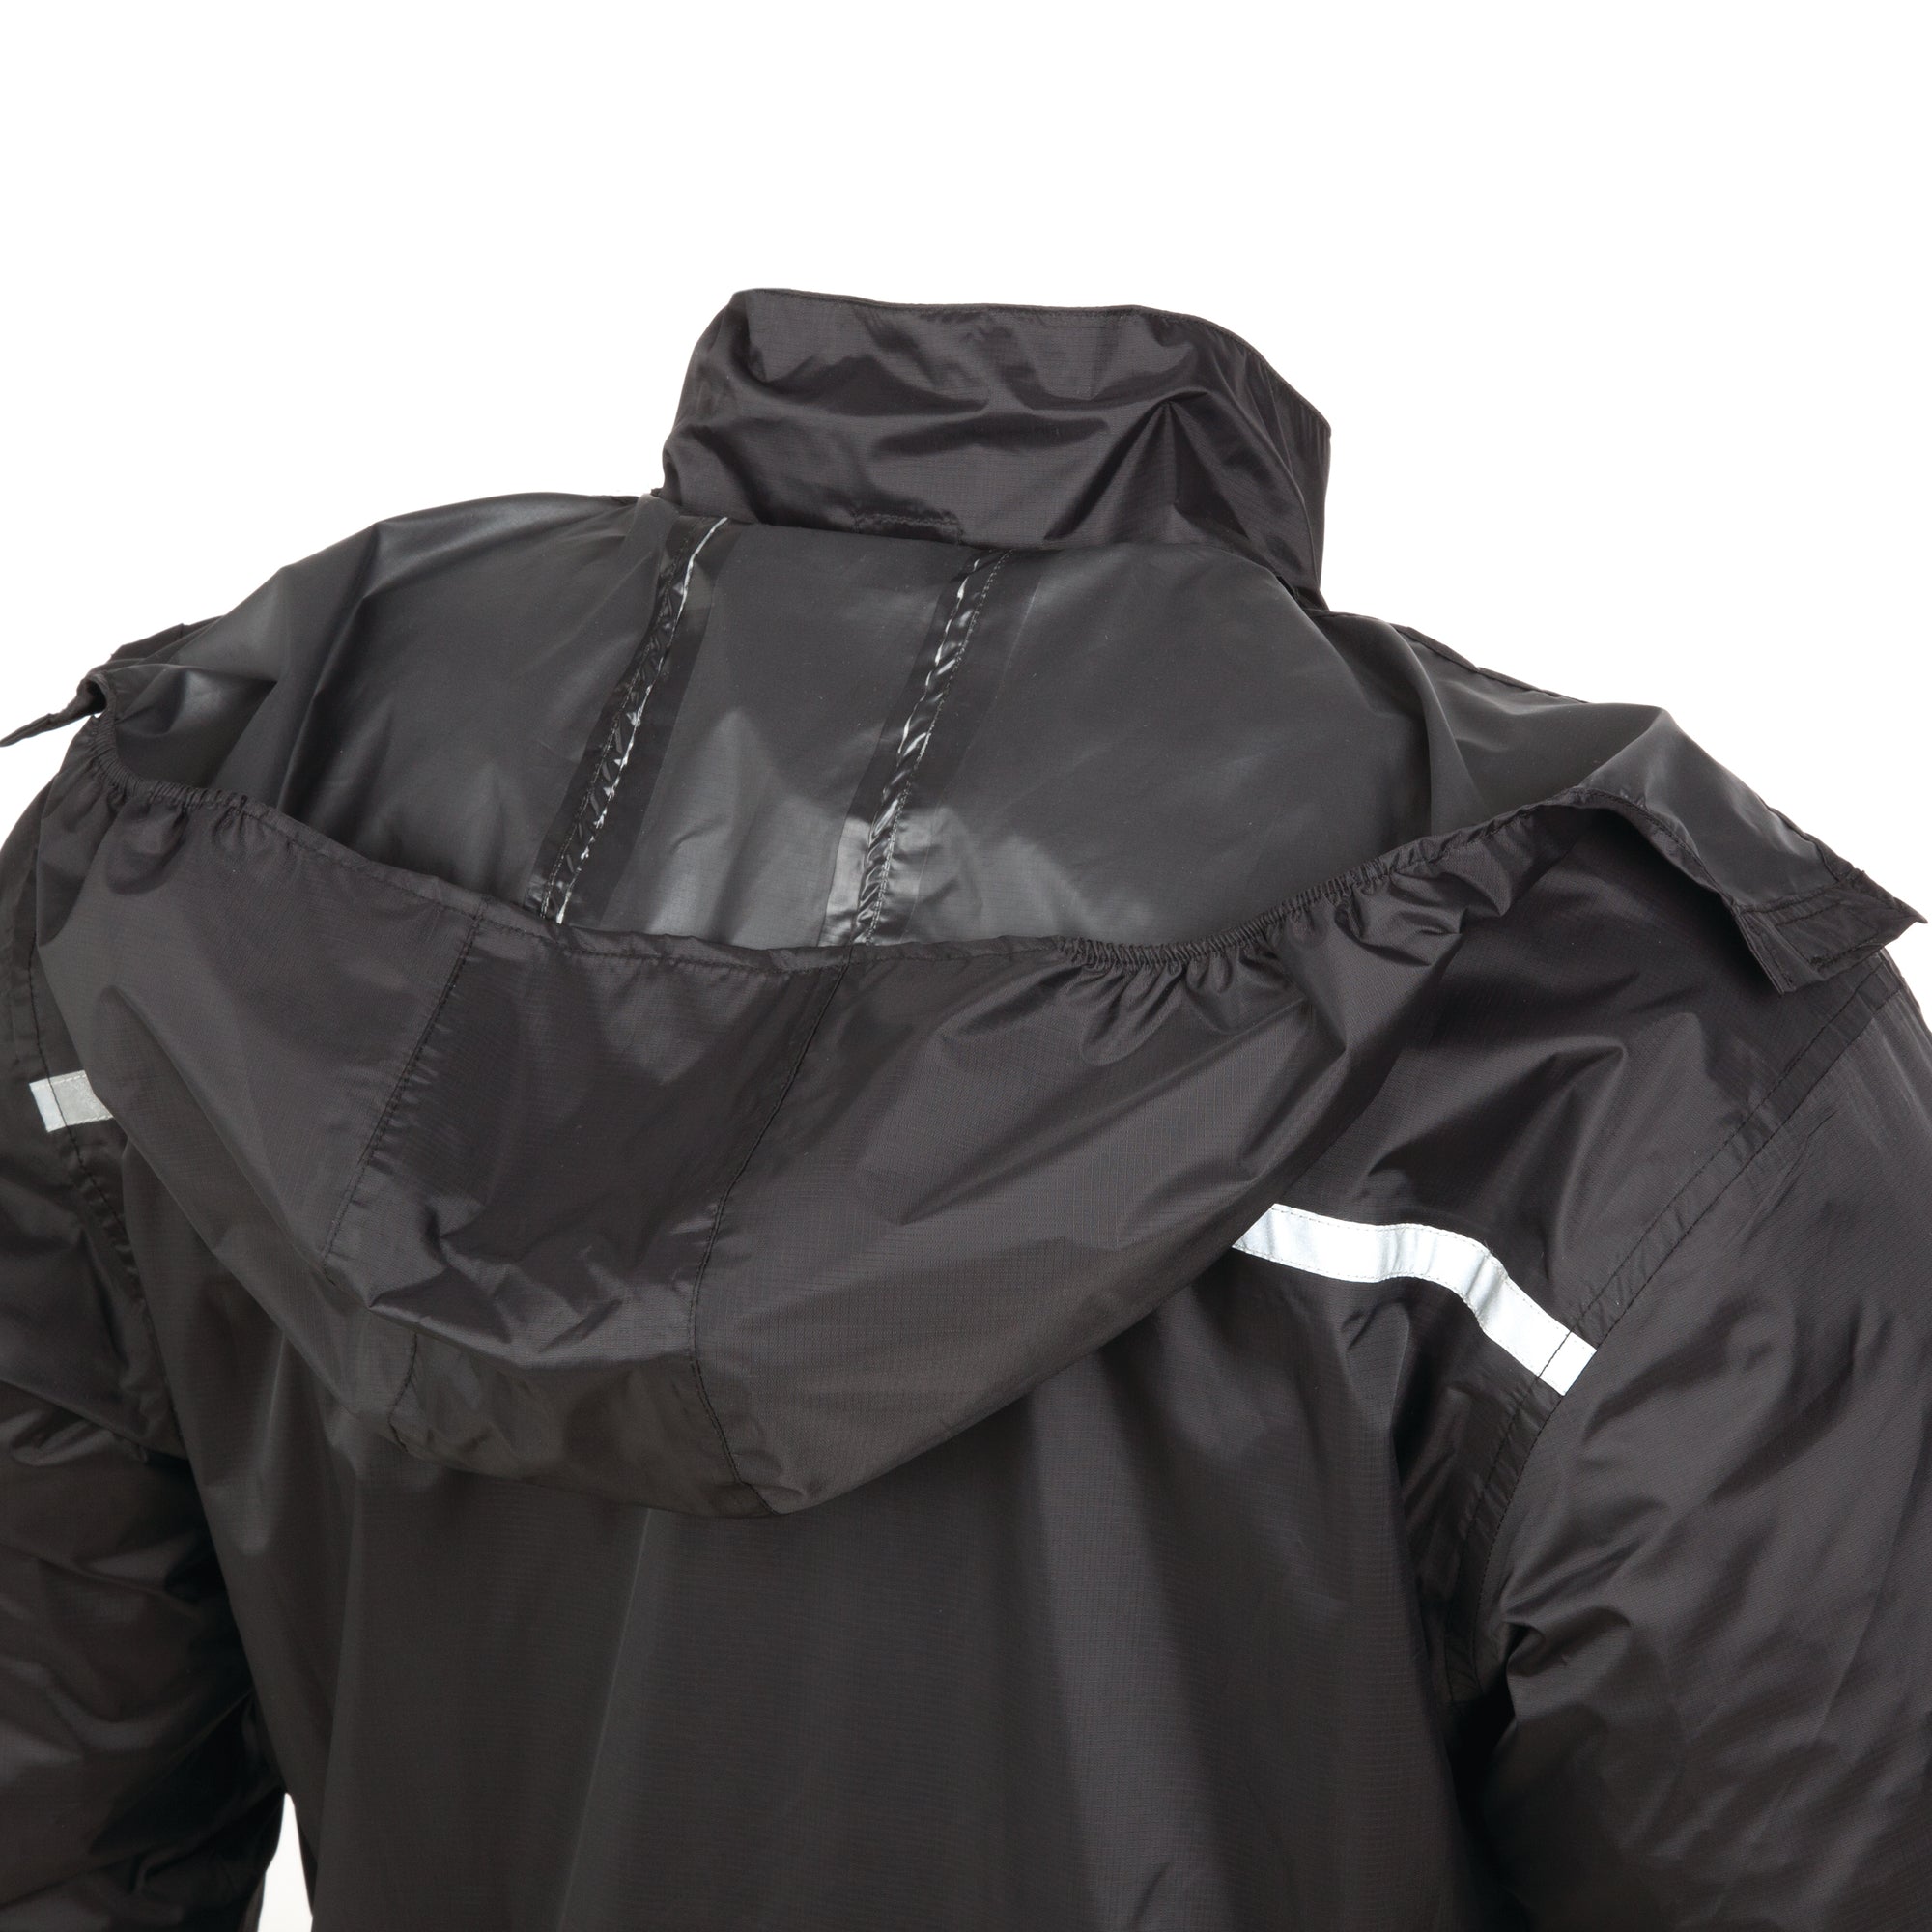 Waterproof motorcycle black jacket hoodie